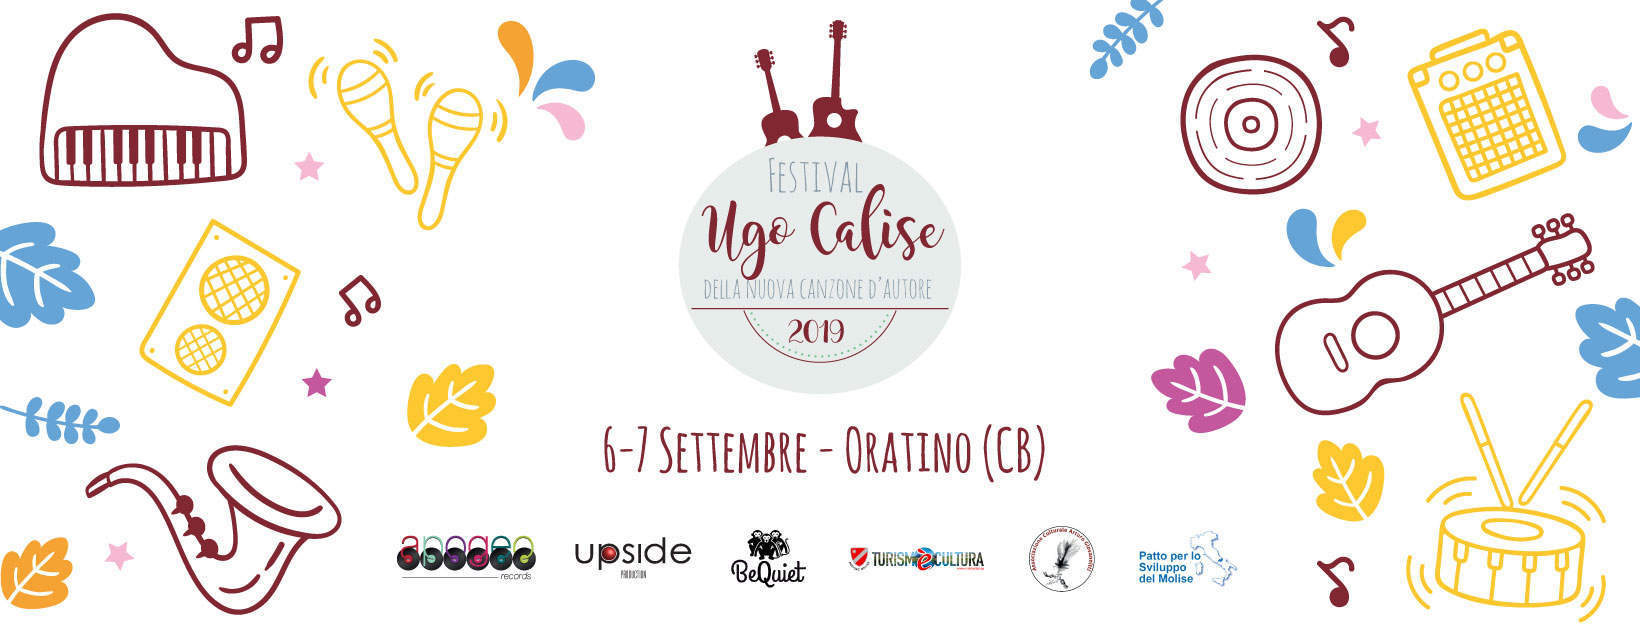 2019.08.29 Torna il Festival della Nuova Canzone dAutore Ugo Calise